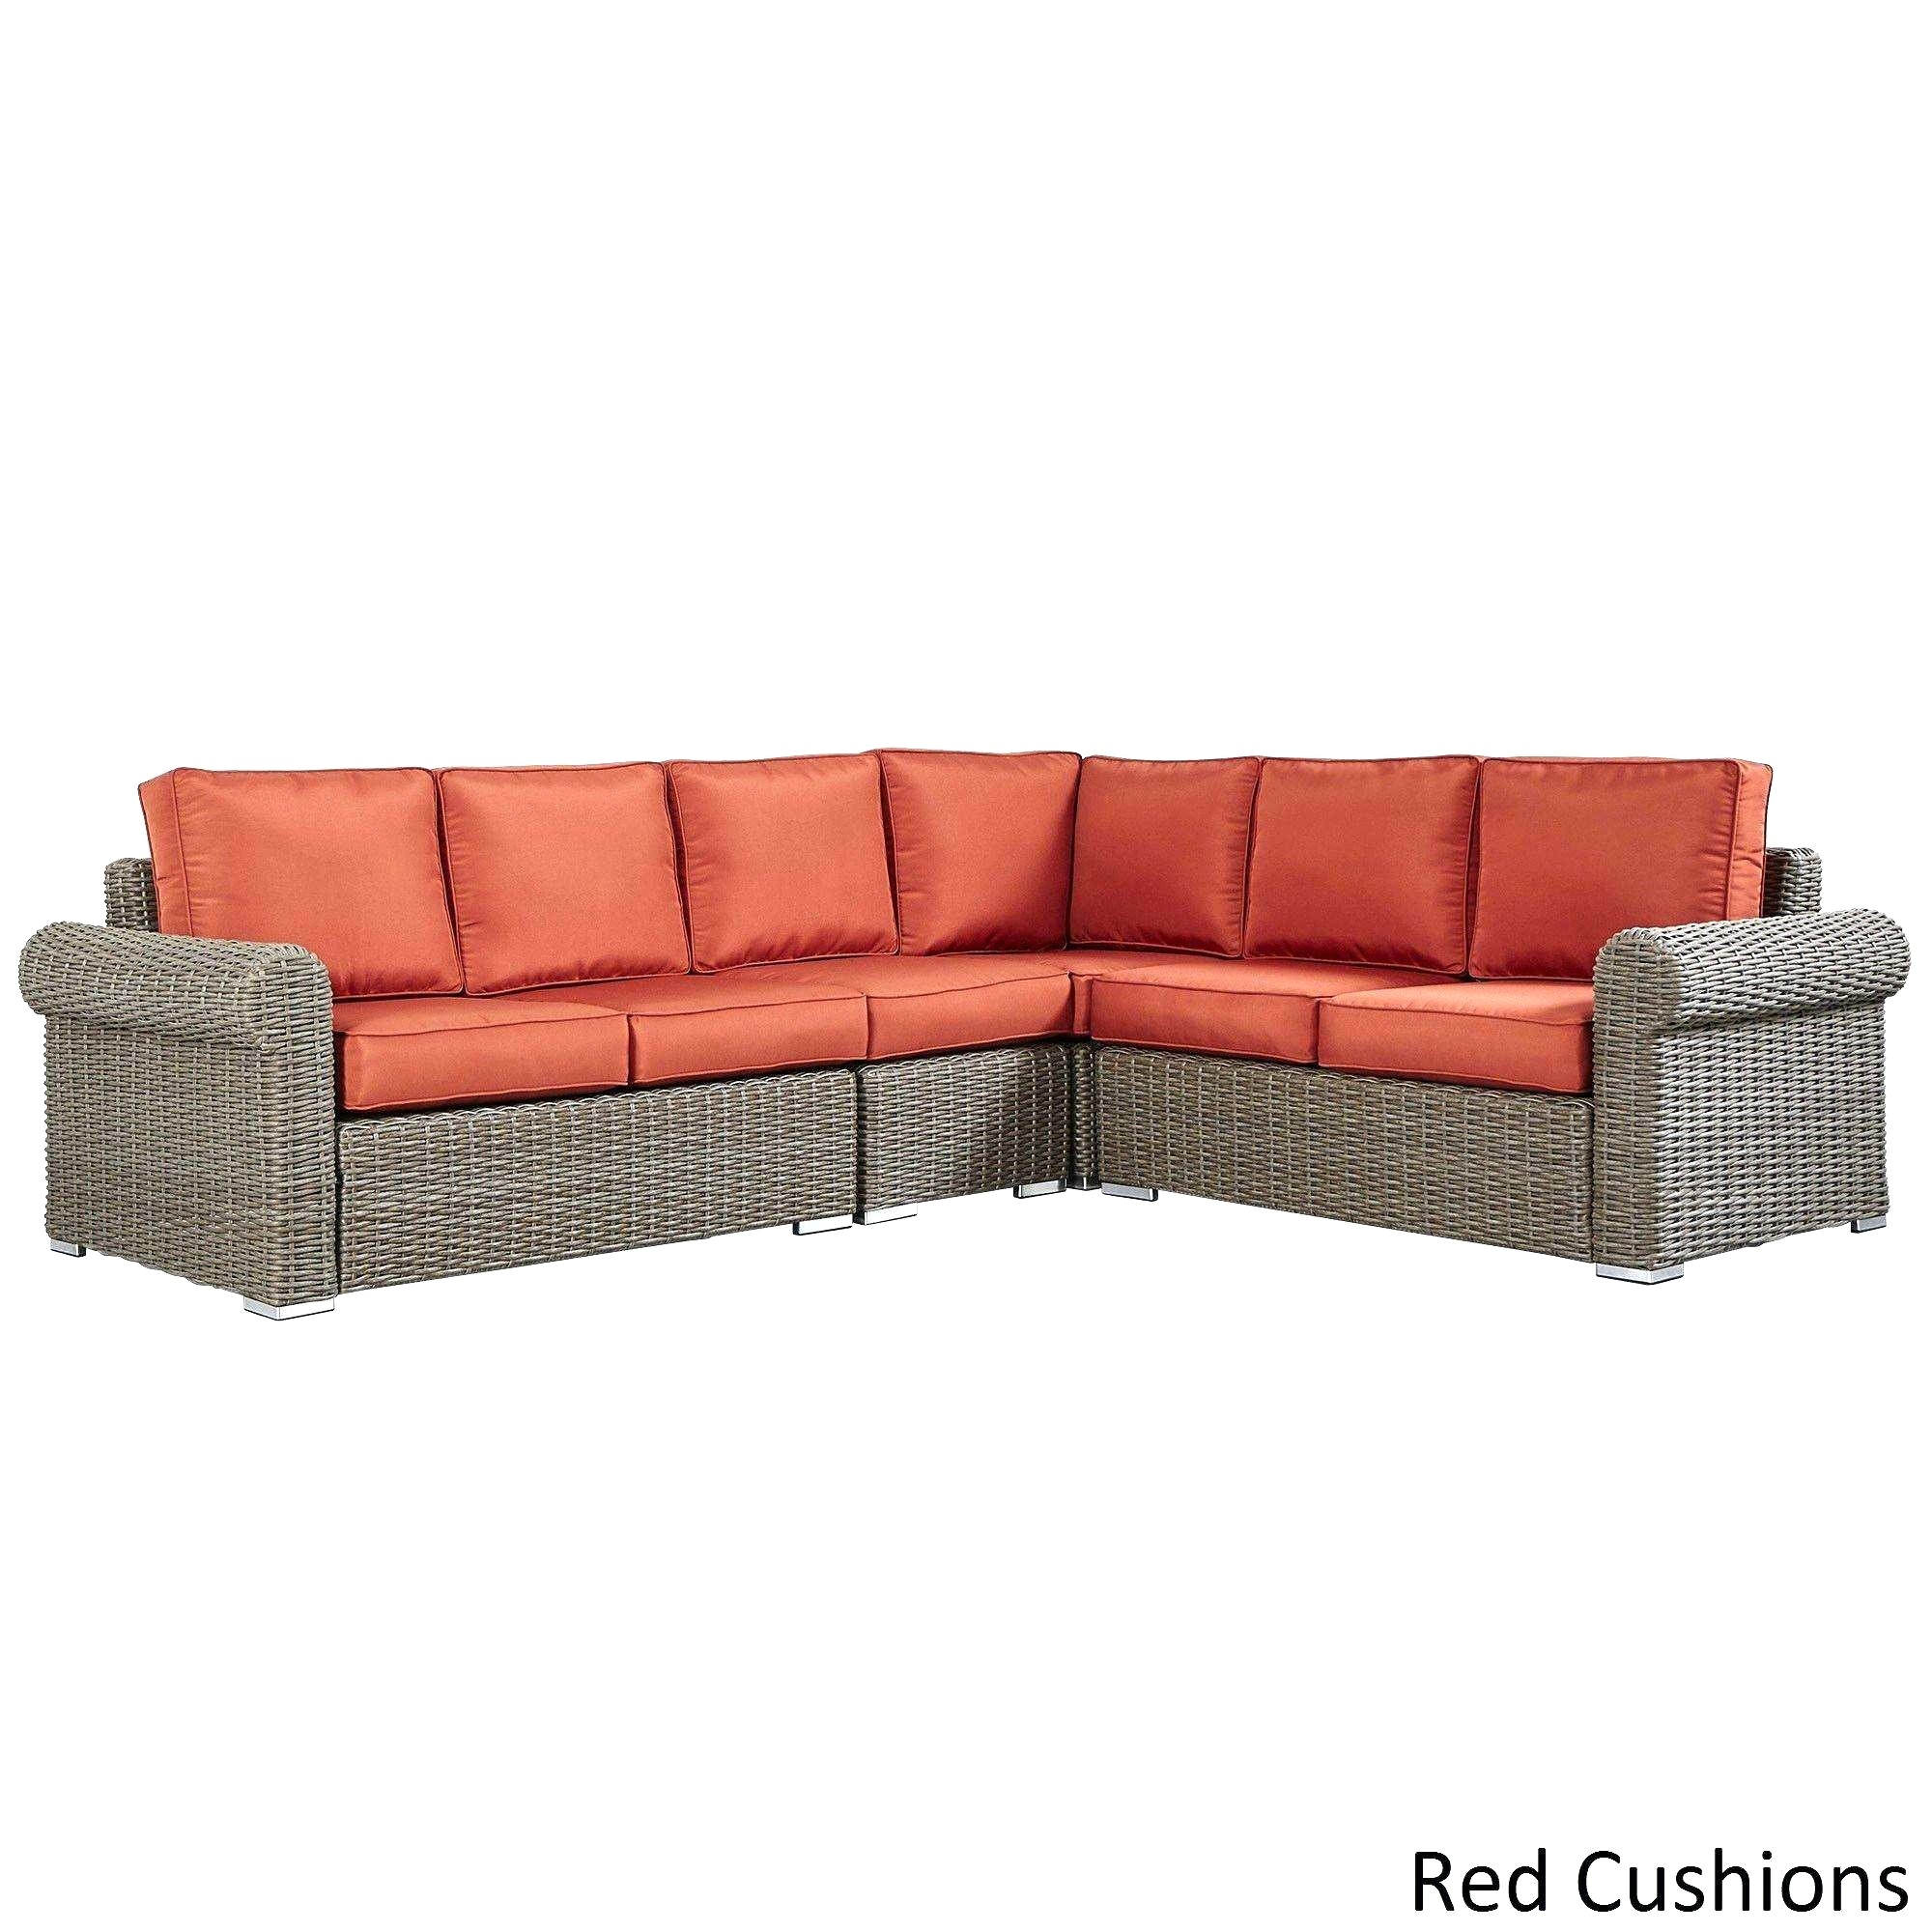 new sofas columbus ohio outdoor furniture columbus ohio 8 piece living room furniture set 0d